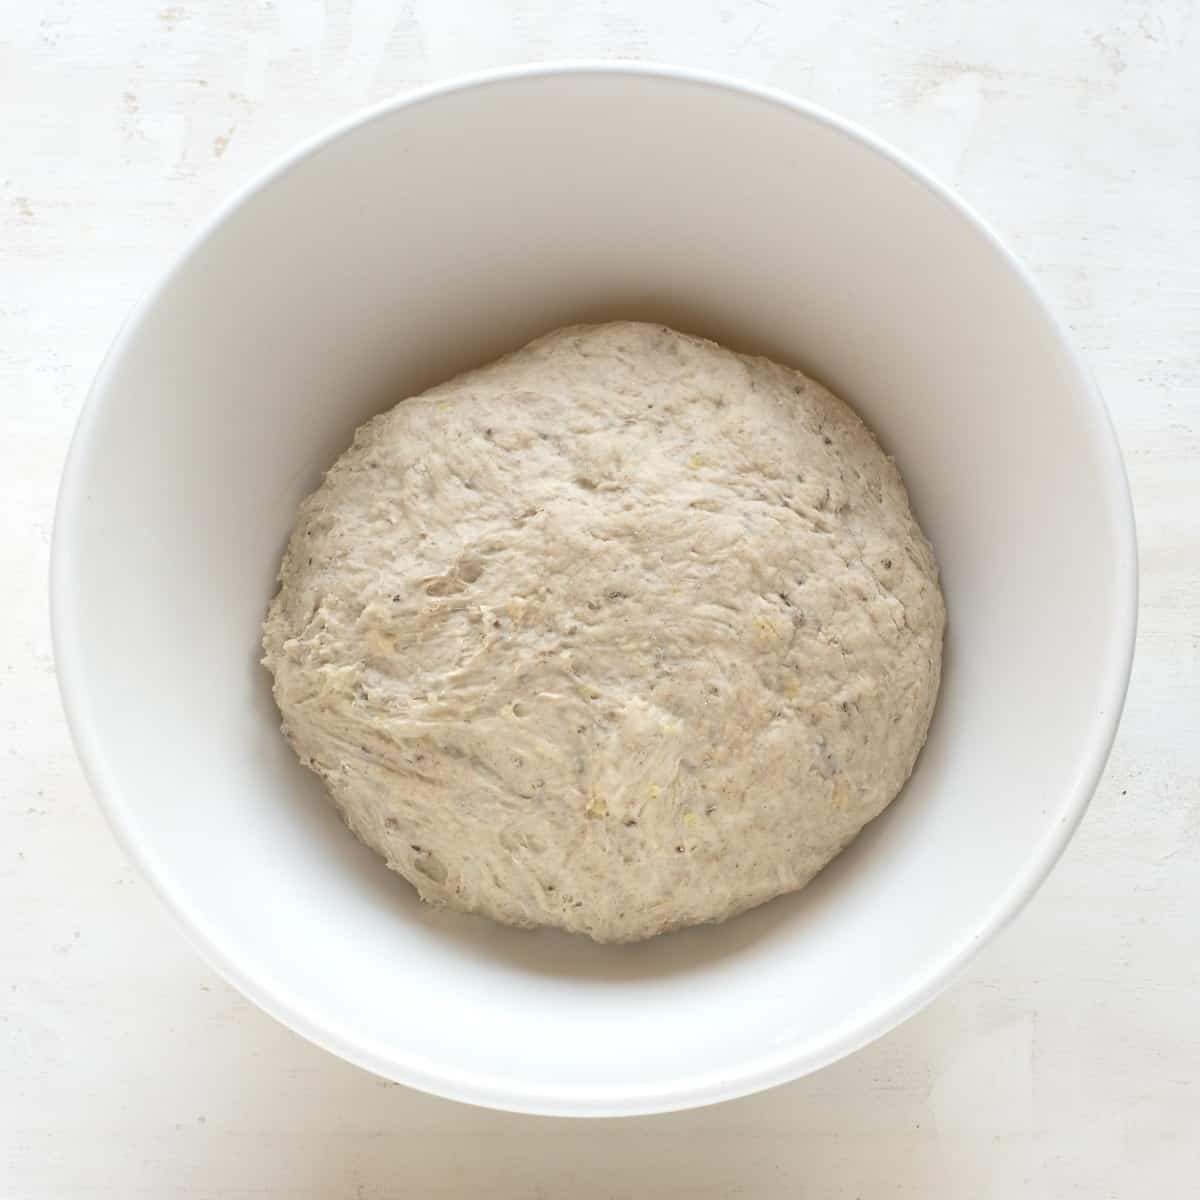 Bread dough in a white bowl.